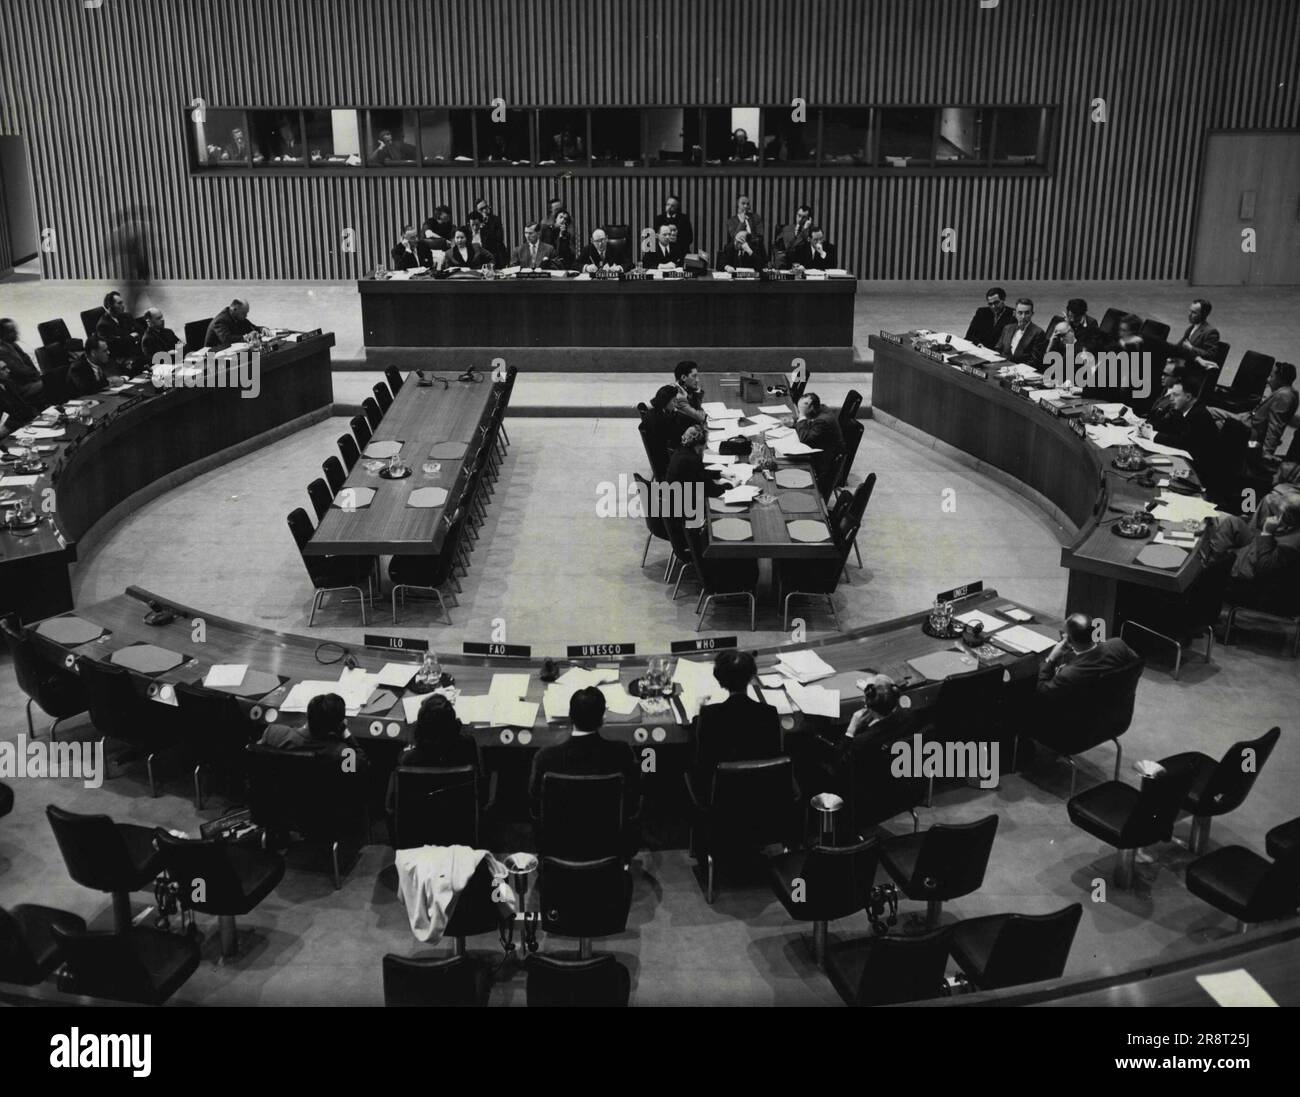 Commissione sociale Open otto sessione -- la Commissione sociale dei 18 membri questa mattina ha aperto la sua ottava sessione, funzionari selezionati (Presidente, Henri Hauck, della Francia; 1 ° Vice-Presidente R.B. Curry, del Canada; 2d Vice-Presidente C.V. Moog, del Brasile; relatore, Dr. G.G. Lotan, di Israele), ha adottato un ordine del giorno di 11 punti e ha iniziato la discussione del primo punto sostanziale. Visione generale della riunione. 12 maggio 1952. (Foto di Unations). Foto Stock